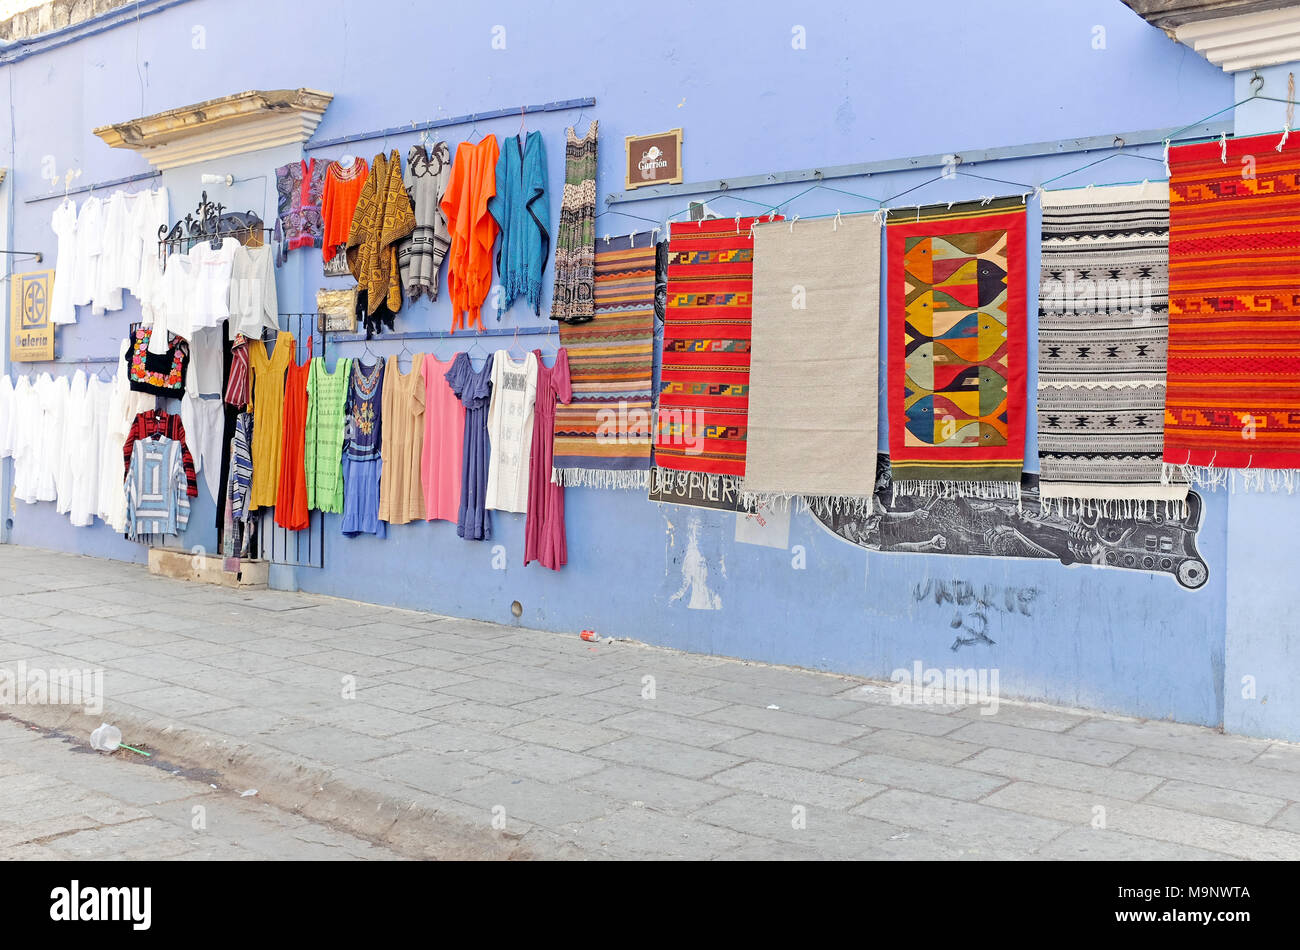 Les vêtements et les tapis sont exposés à la vente le long d'un mur dans le centre historique de Oaxaca, Mexique. Banque D'Images